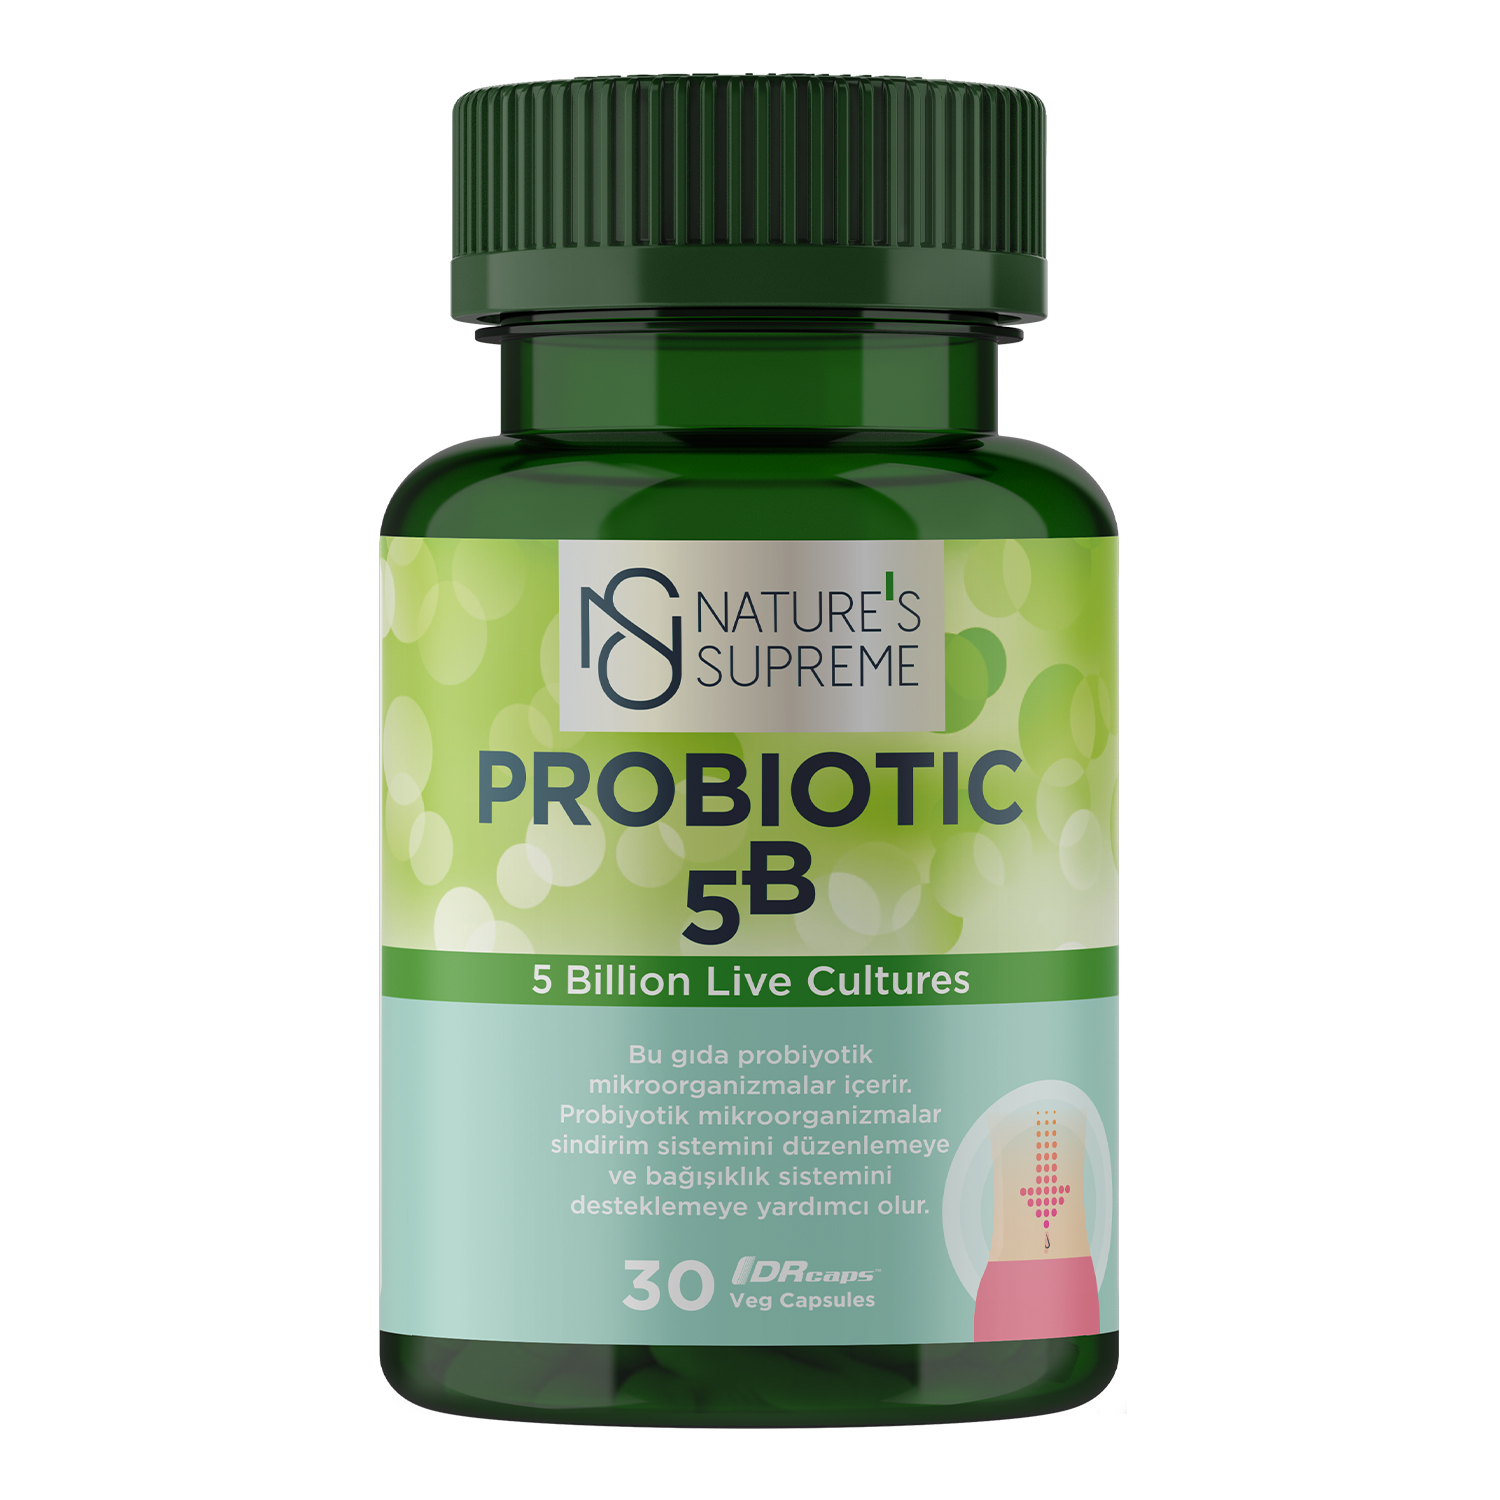 Probiotic 5B